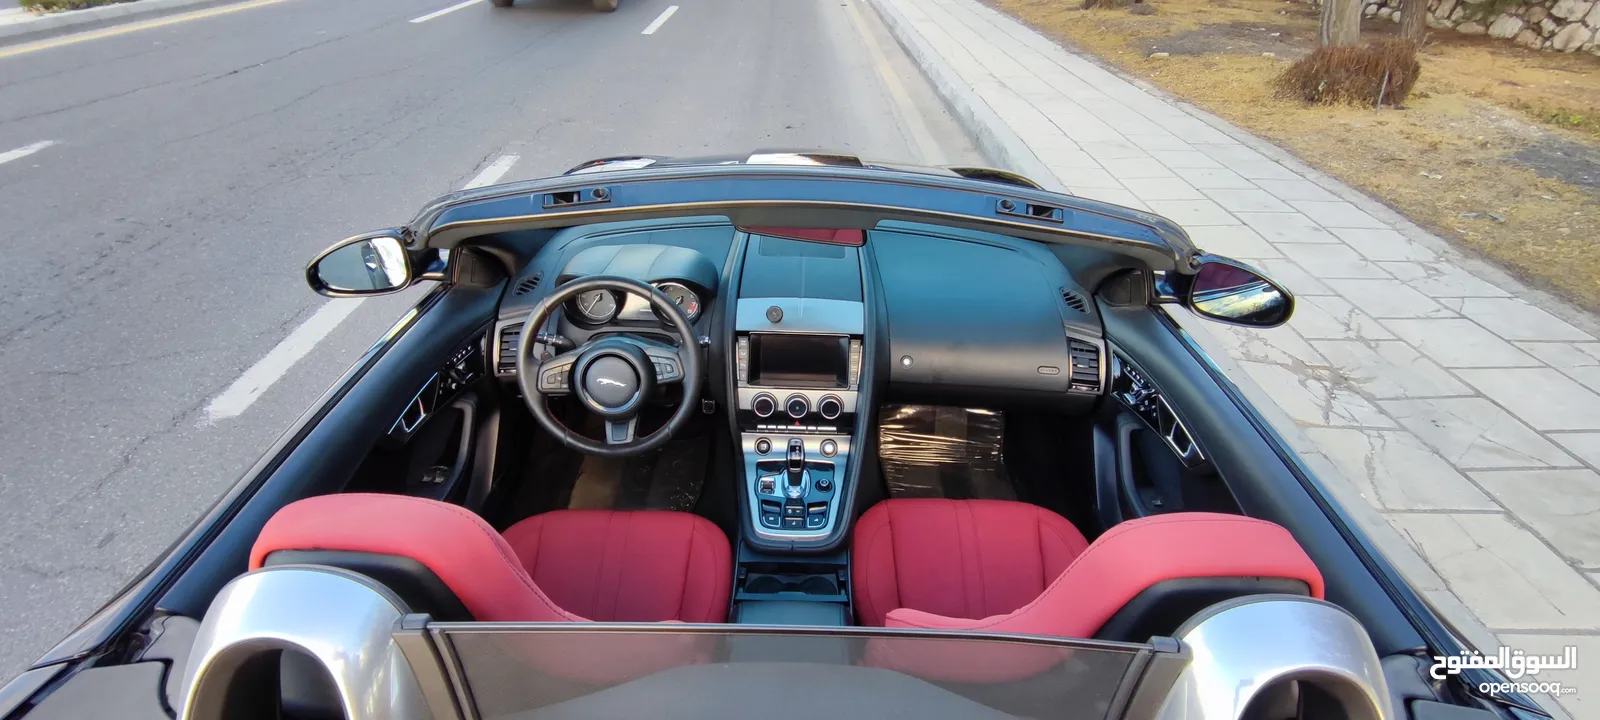 Jaguar f type 2014 supercharged 3000cc V6